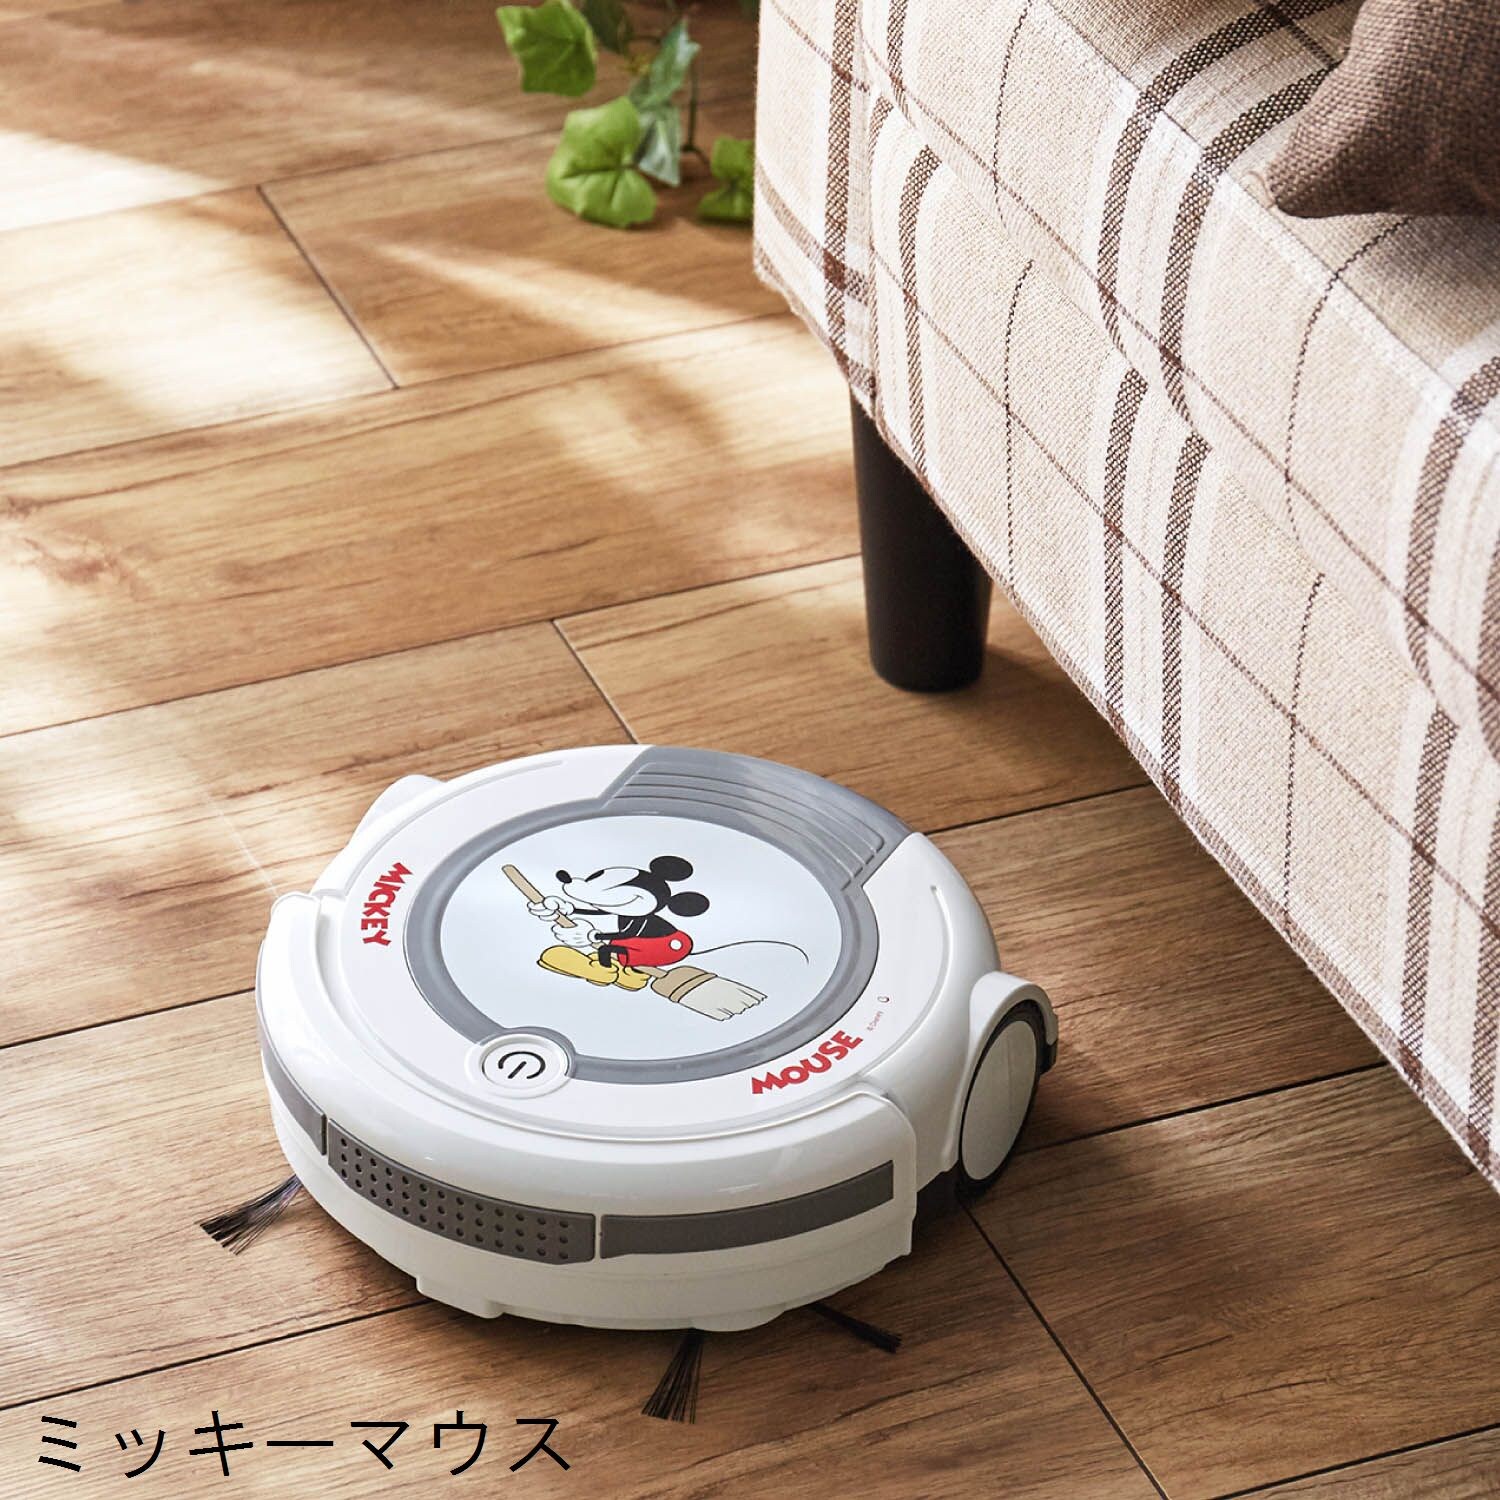 【ディズニー/Disney】ロボットクリーナー(選べるキャラクター)